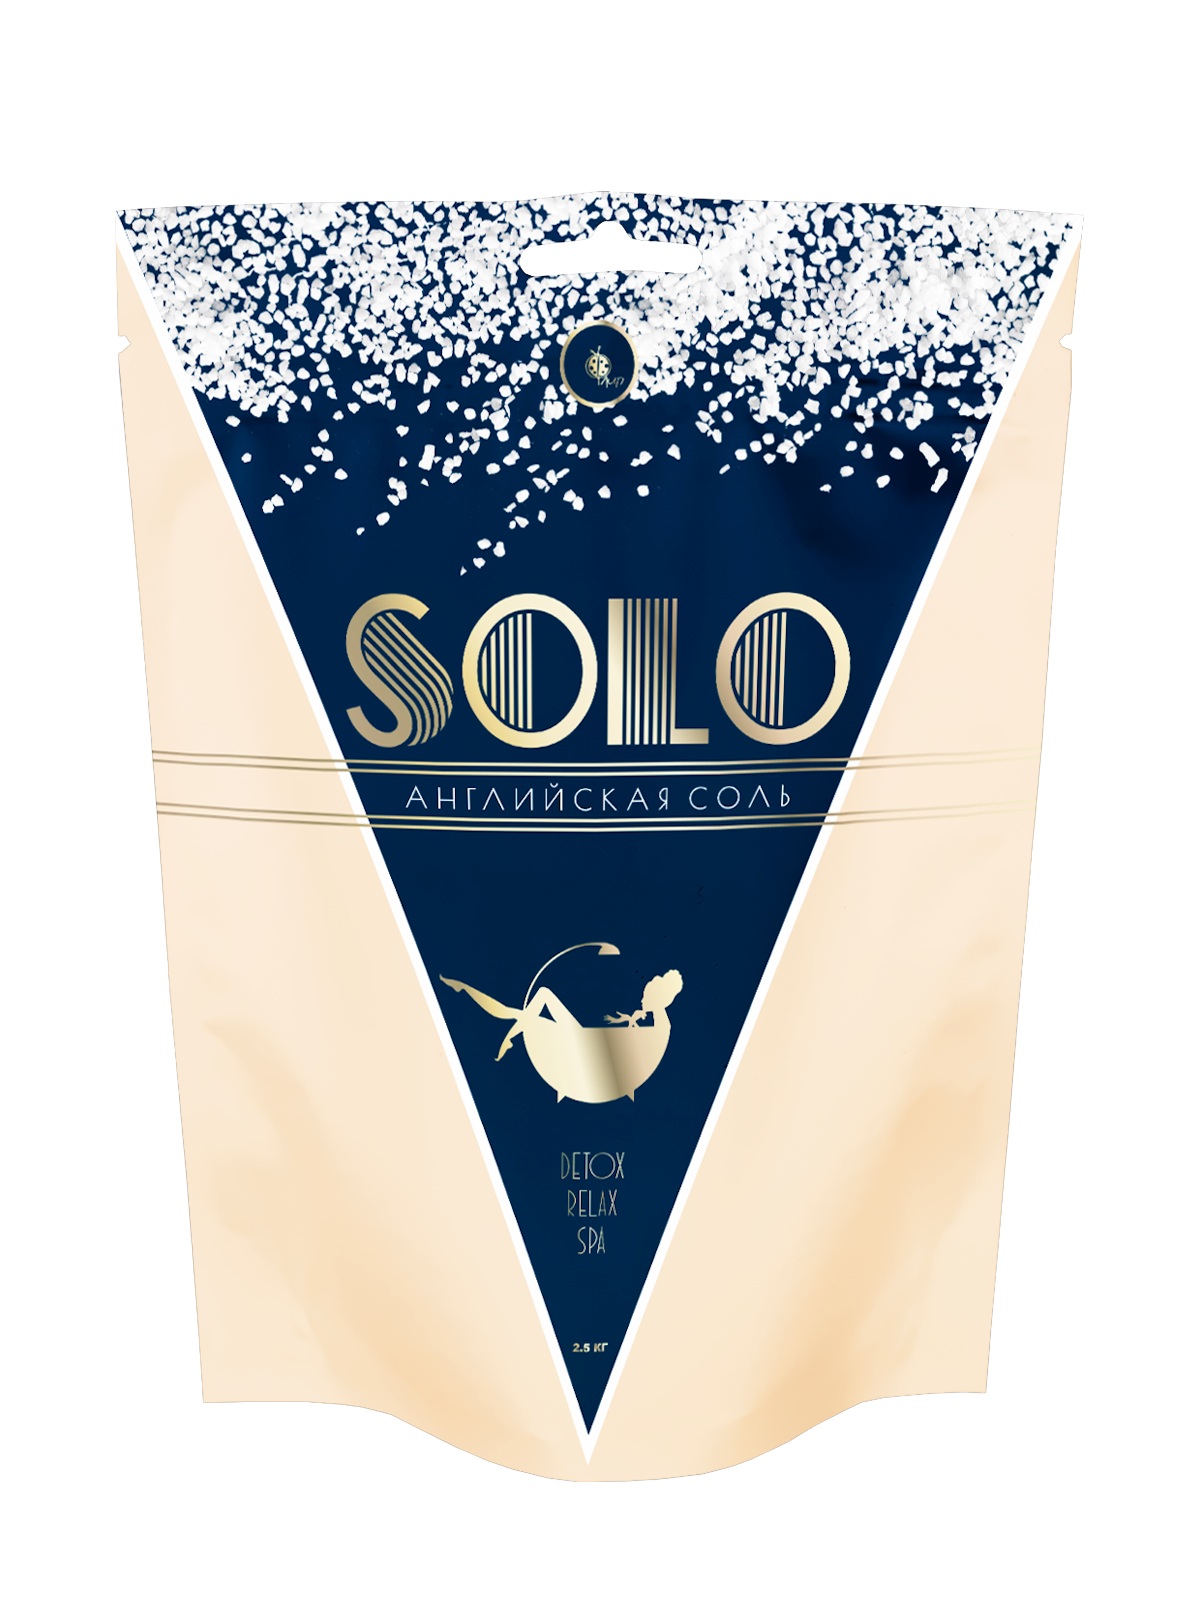 Английская соль для ванны EPSOM Solo. 2,5 кг, для похудения и против отечности, Флип